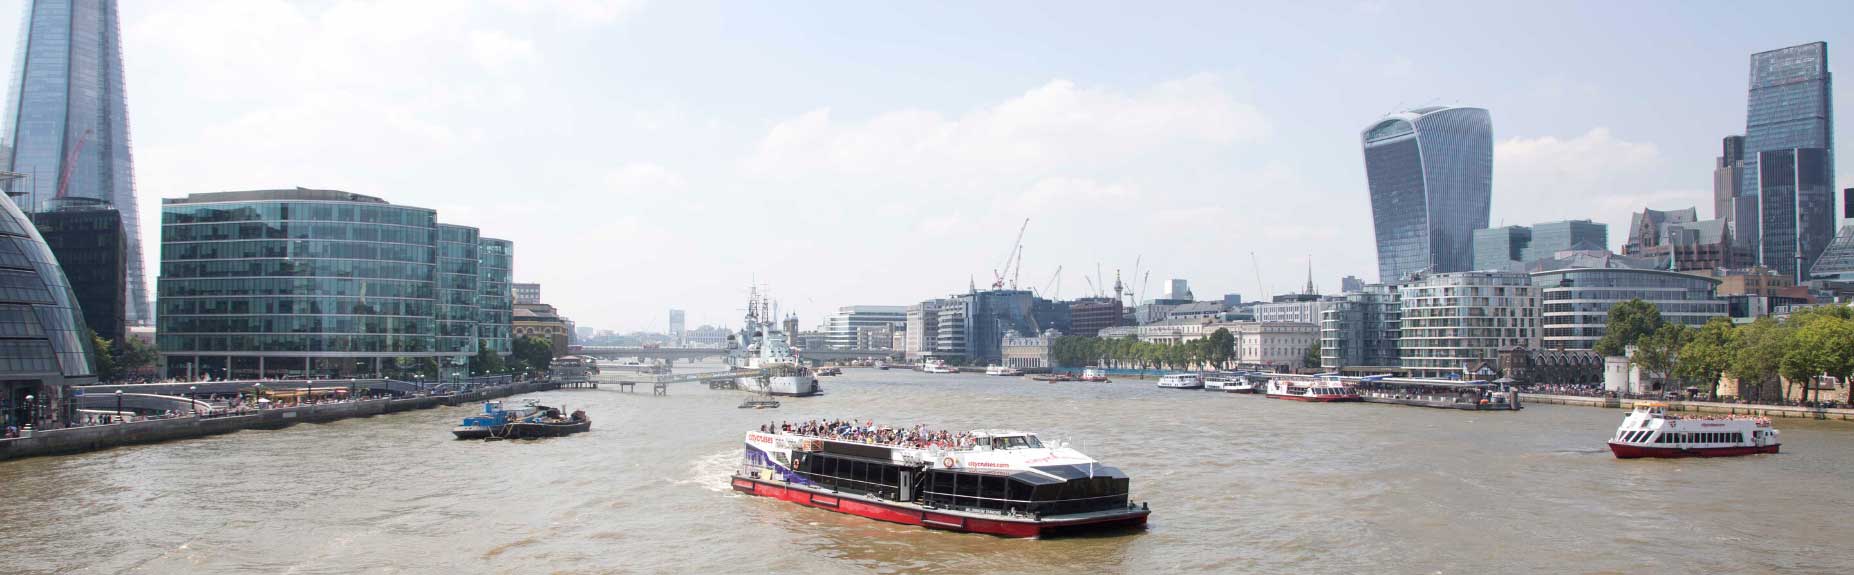 Hai chiếc thuyền city cruise trên sông Thames thành phố ở hai bên